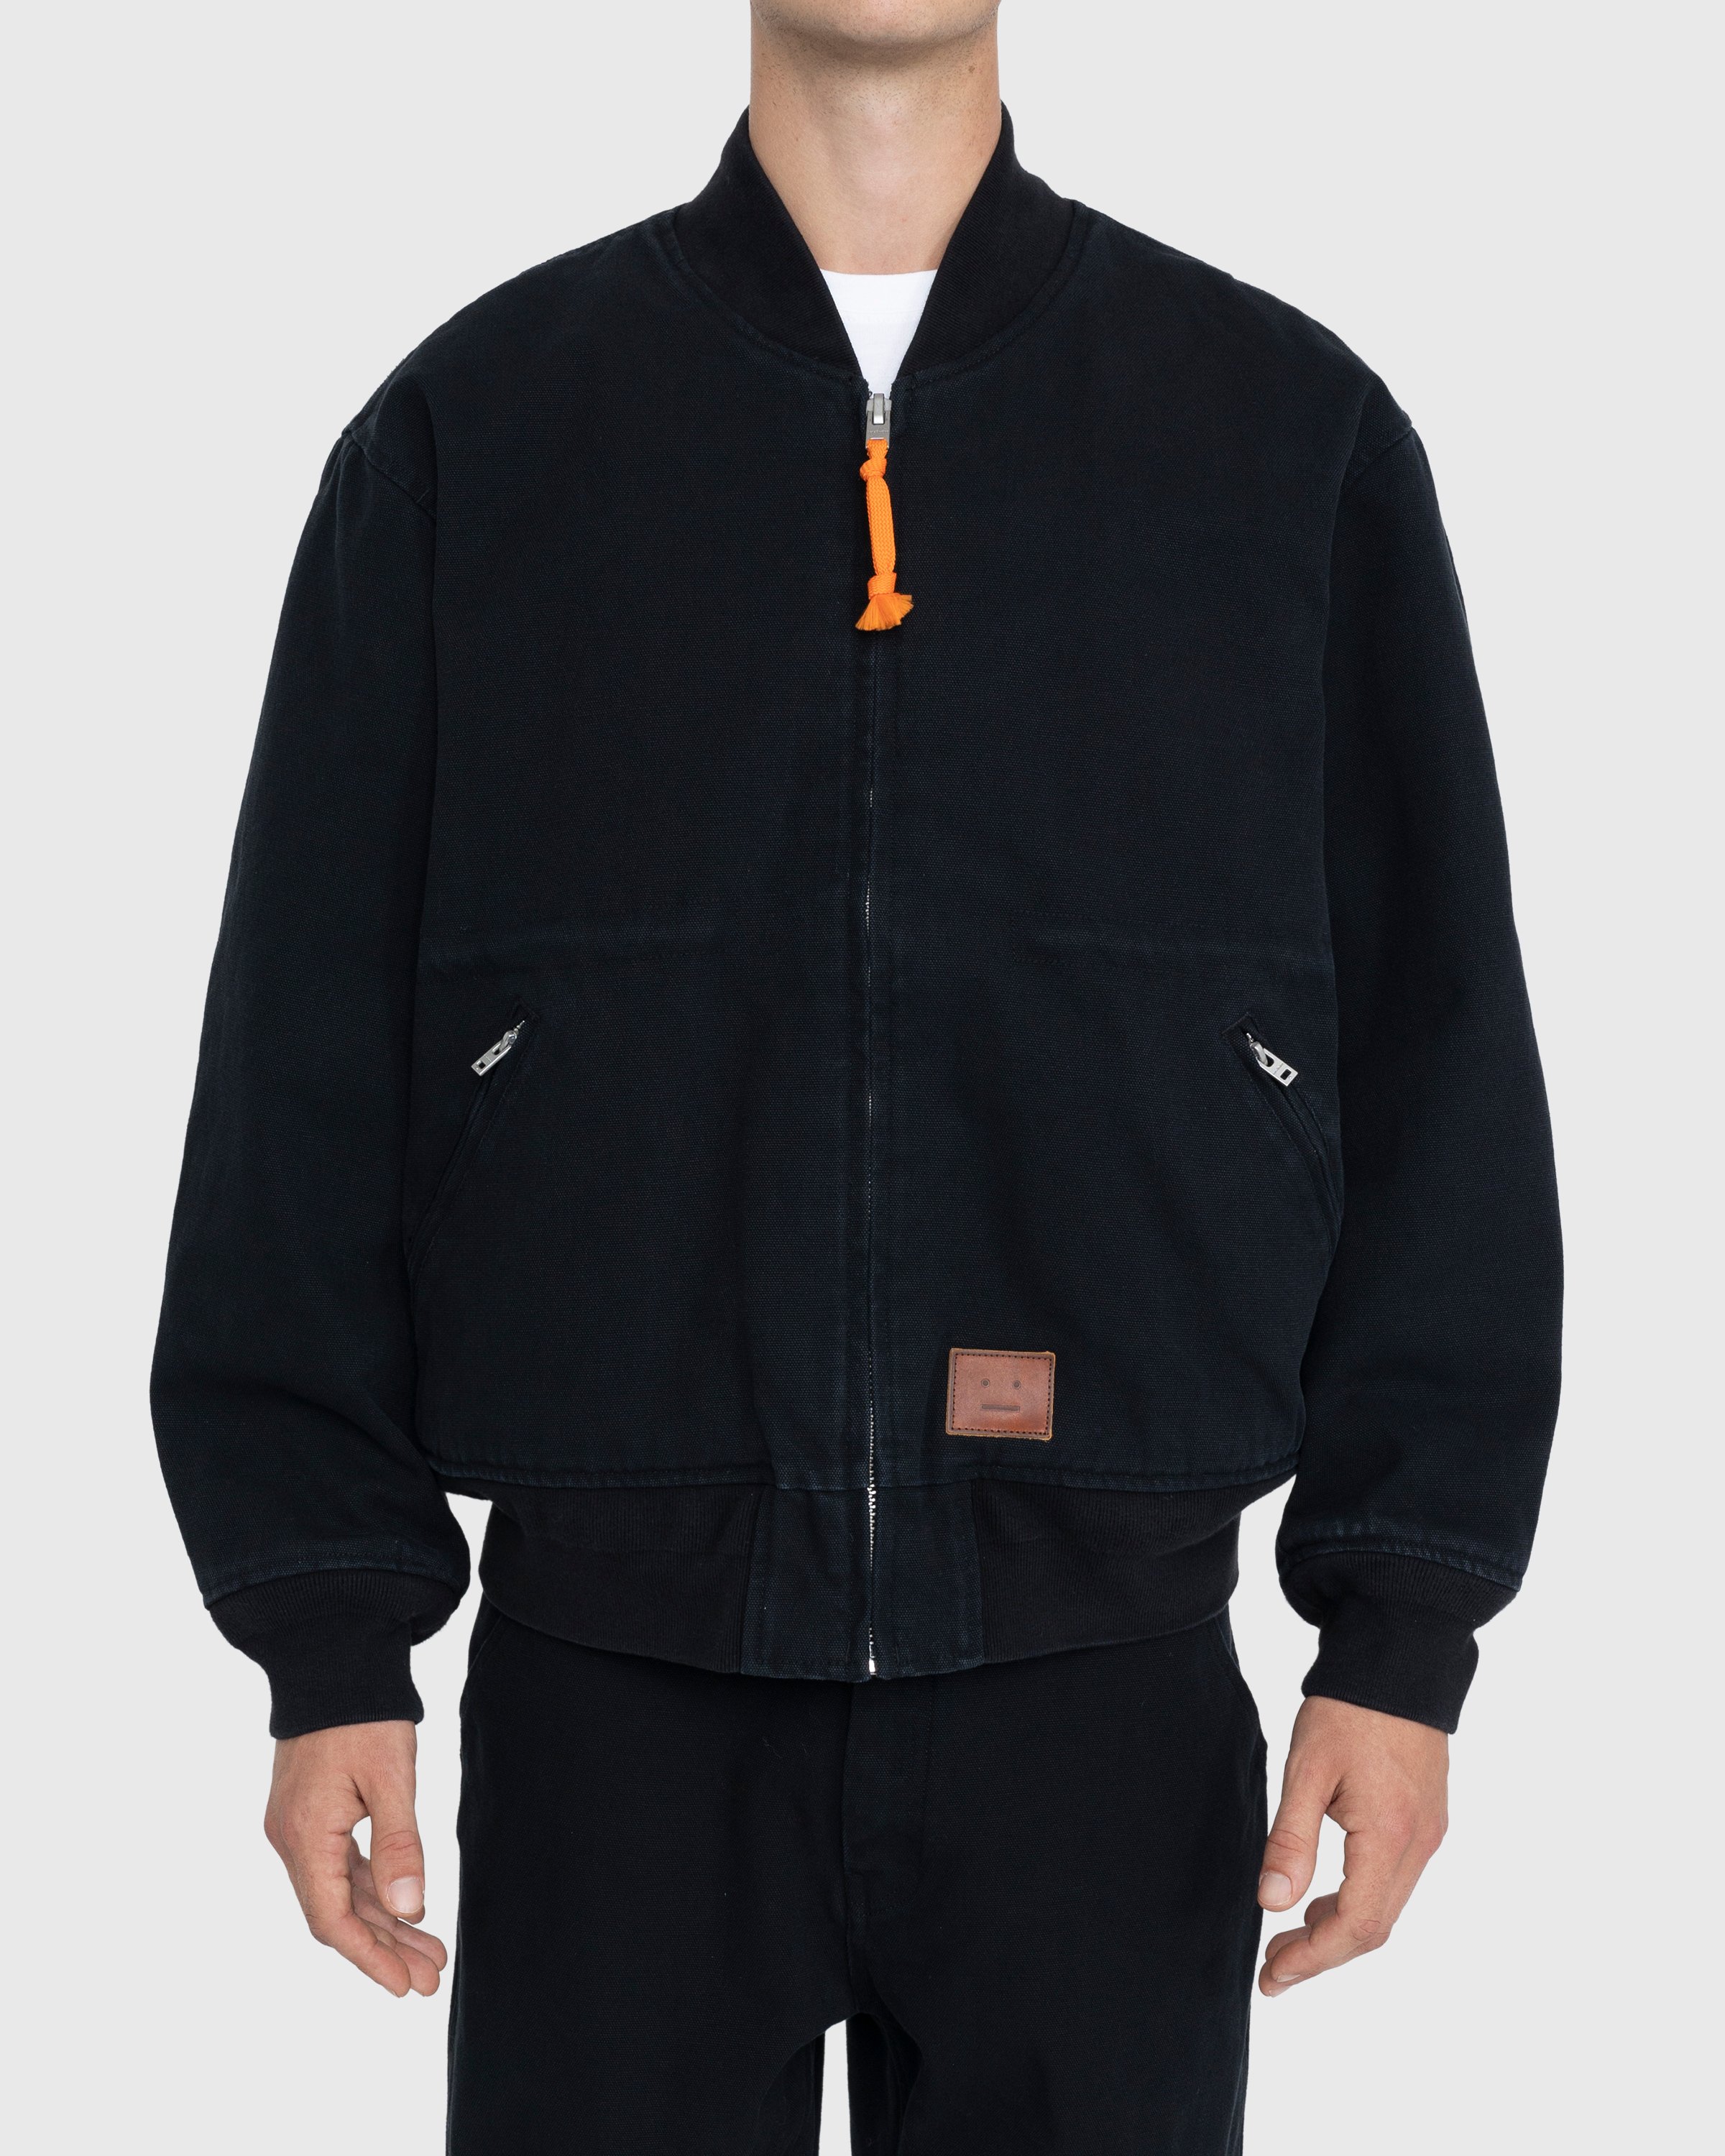 Acne Studios - Organic Cotton Bomber Jacket Black - Clothing - Black - Image 2